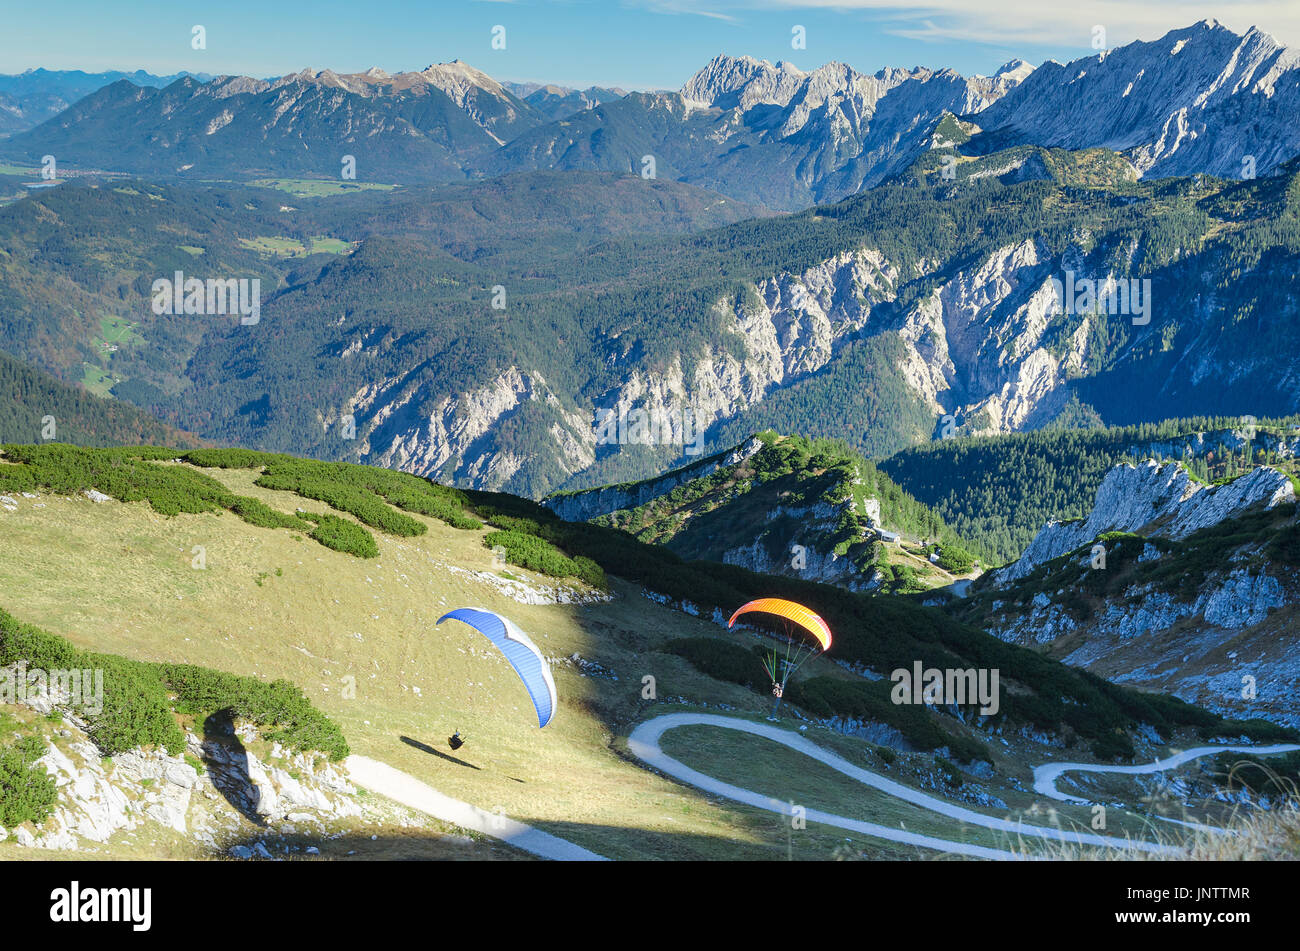 Paar Paraplane starten und Segelfliegen in den Bayerischen Alpen. Stock Foto mit Luftbild auf alpinen Landschaft. Stockfoto